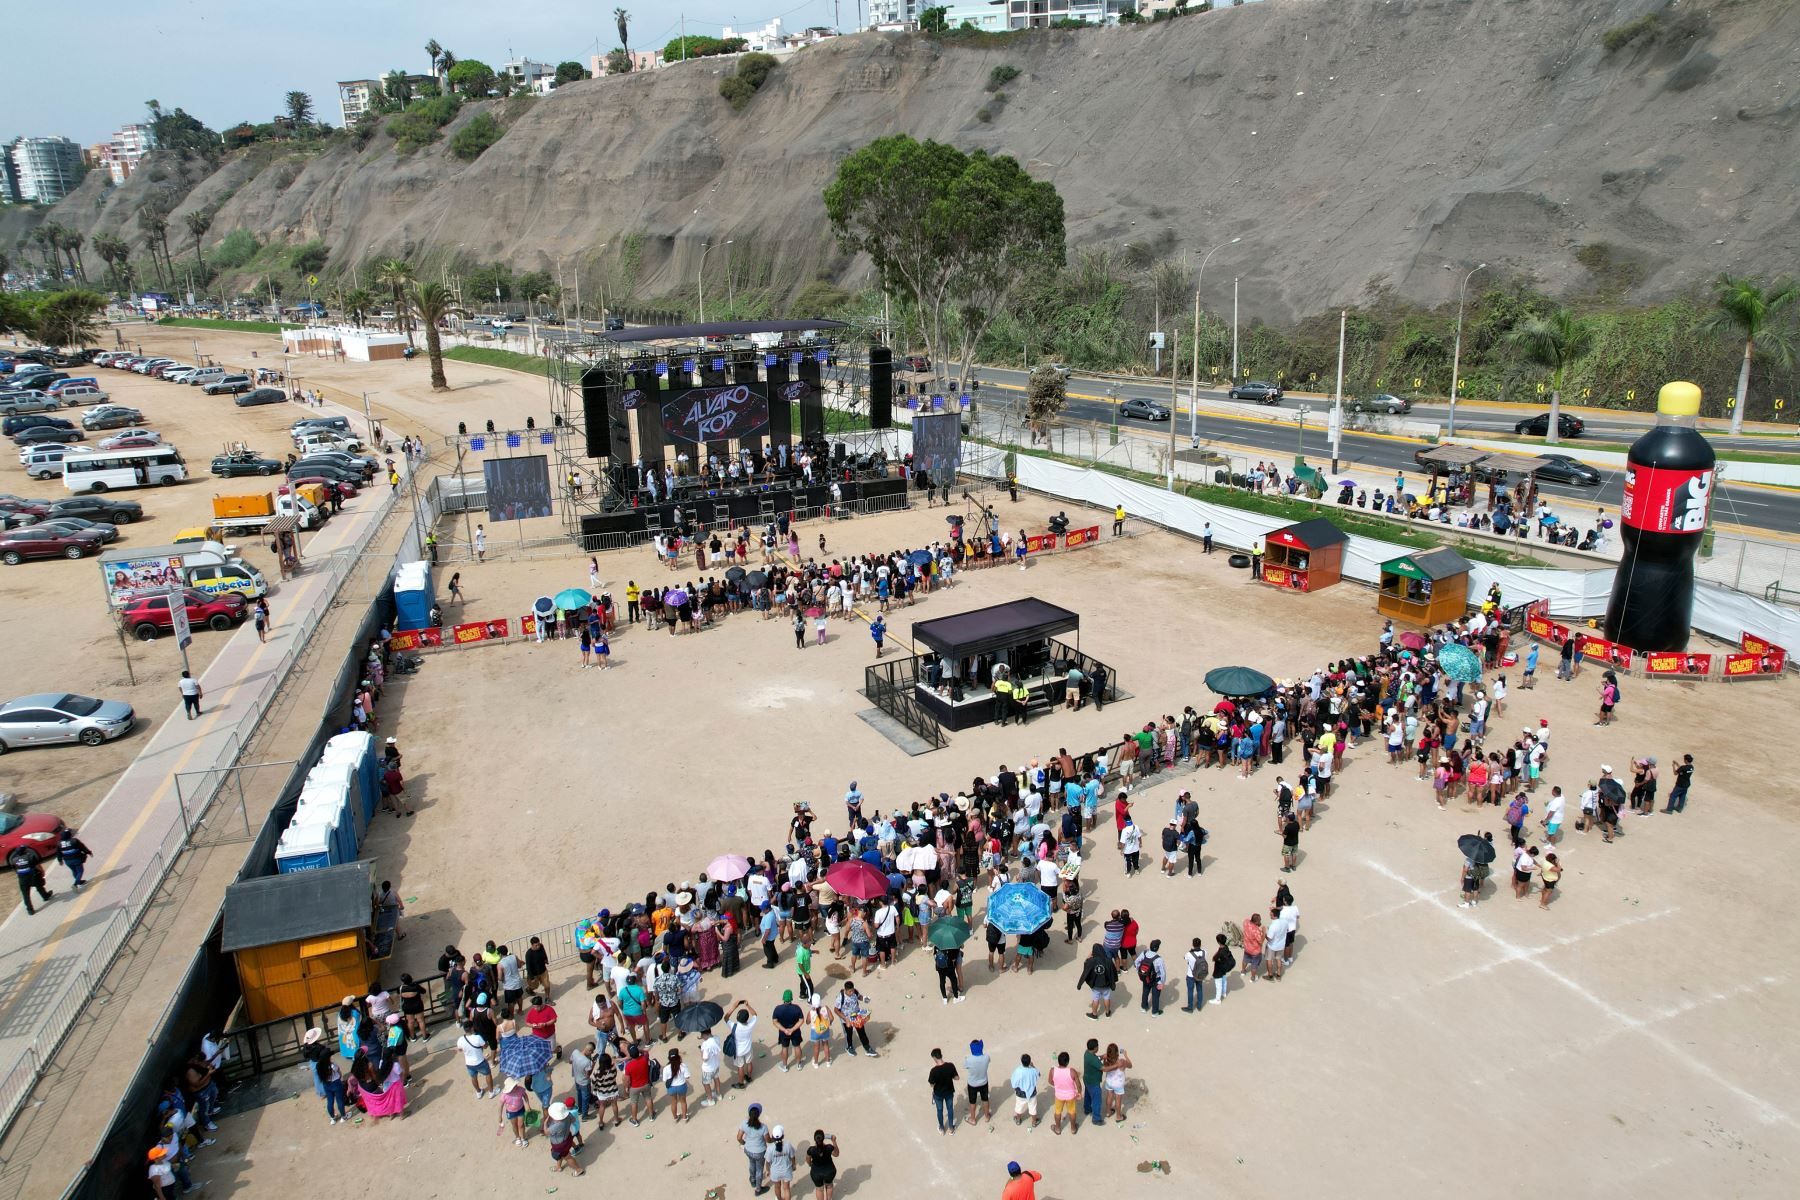 En la explanada colindante a la playa Agua Dulce de Chorrillos se realiza un concierto de música tropical, con la participación de populares artistas de salsa y cumbia peruana. Foto: ANDINA/Daniel Bracamonte